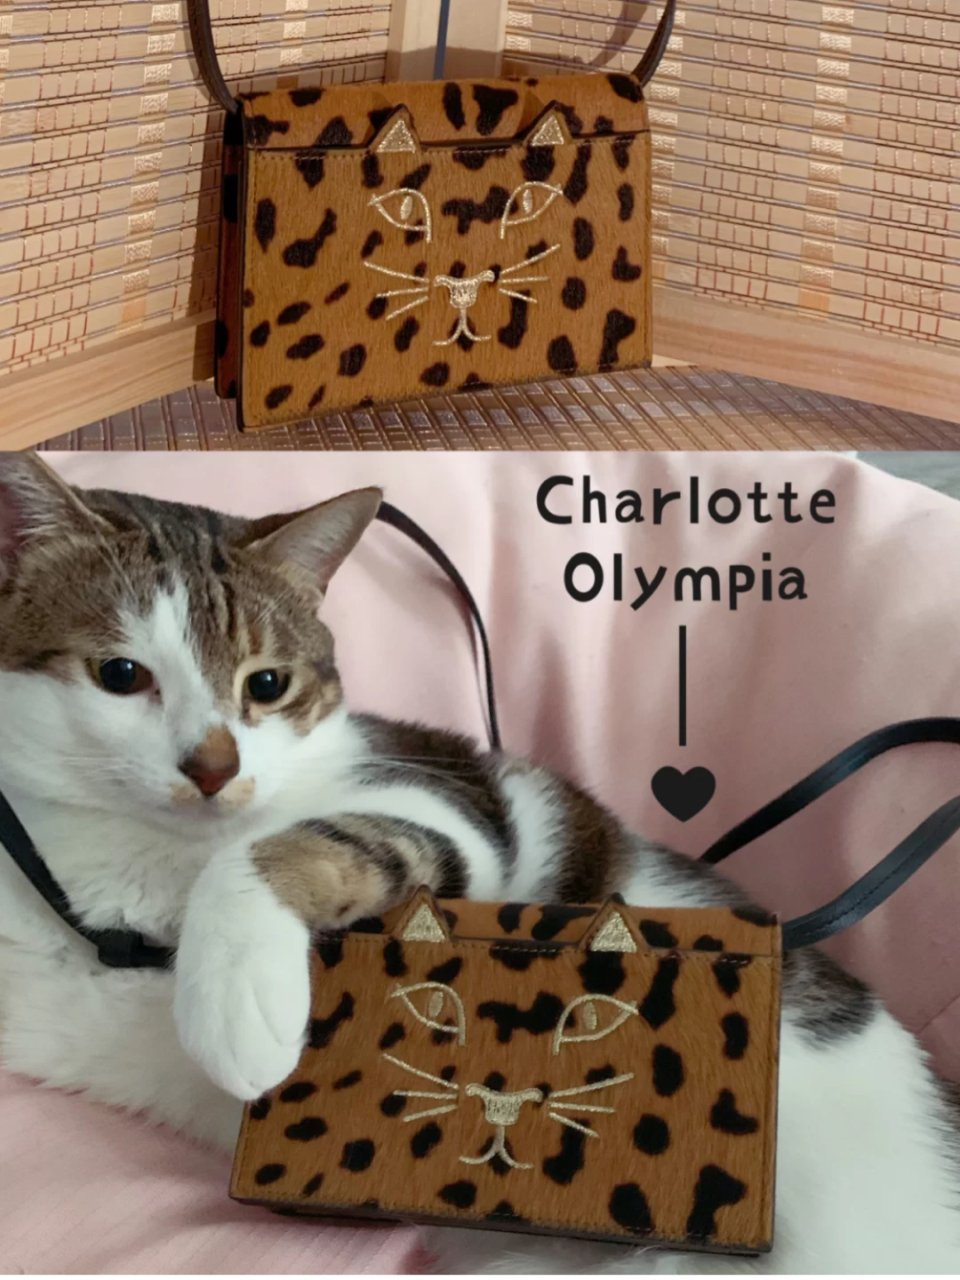 Charlotte Olympia 夏洛特·奥林匹亚,我的猫